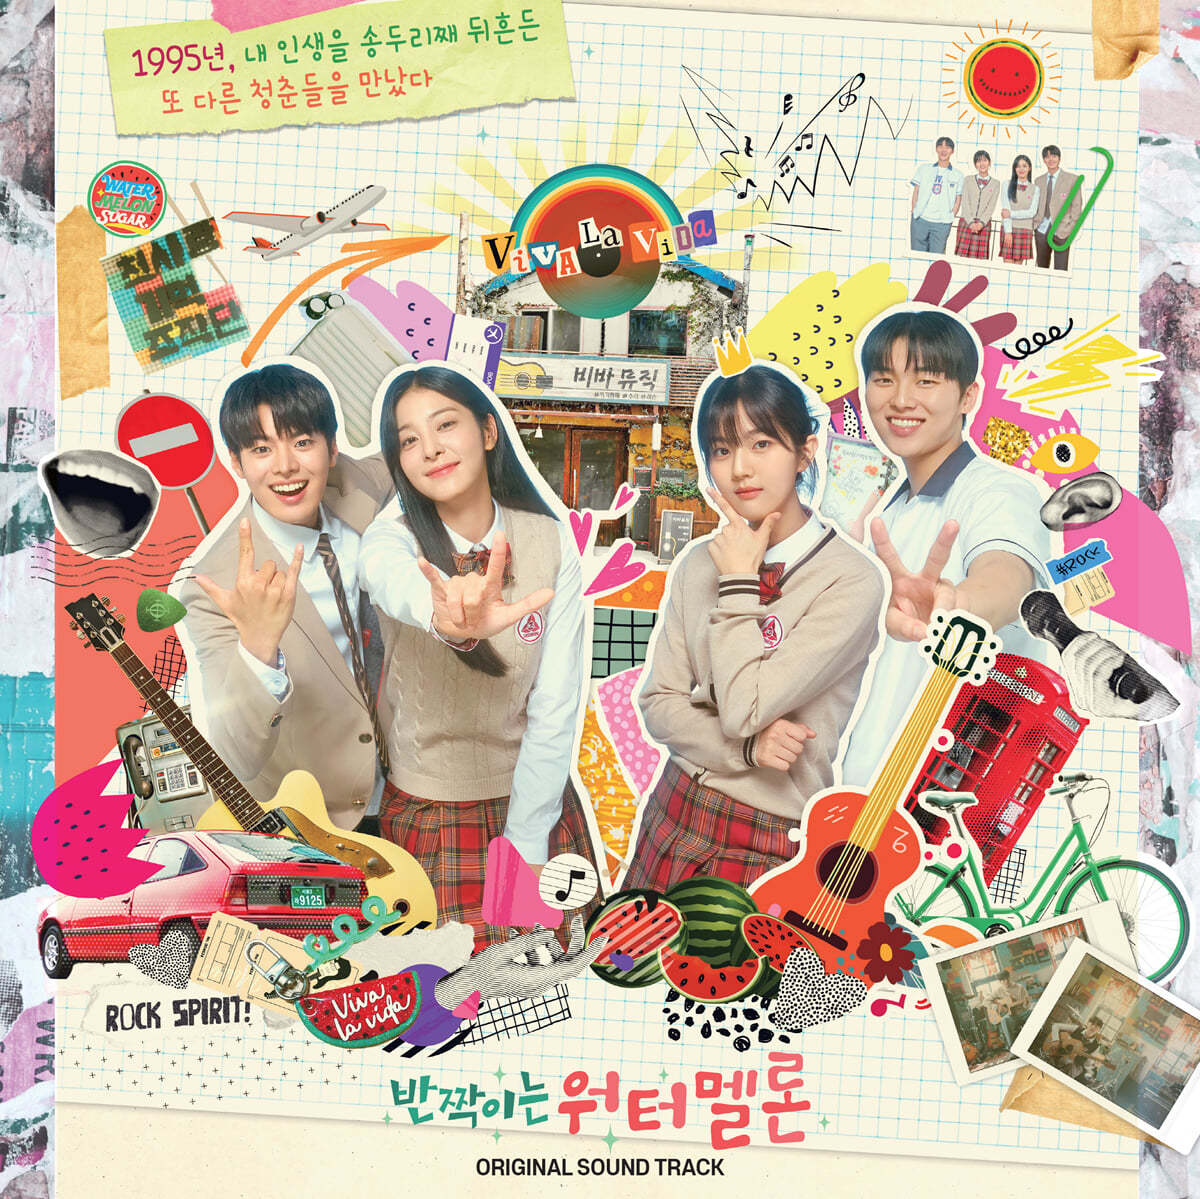 반짝이는 워터멜론 (tvN 월화드라마) OST [LP]